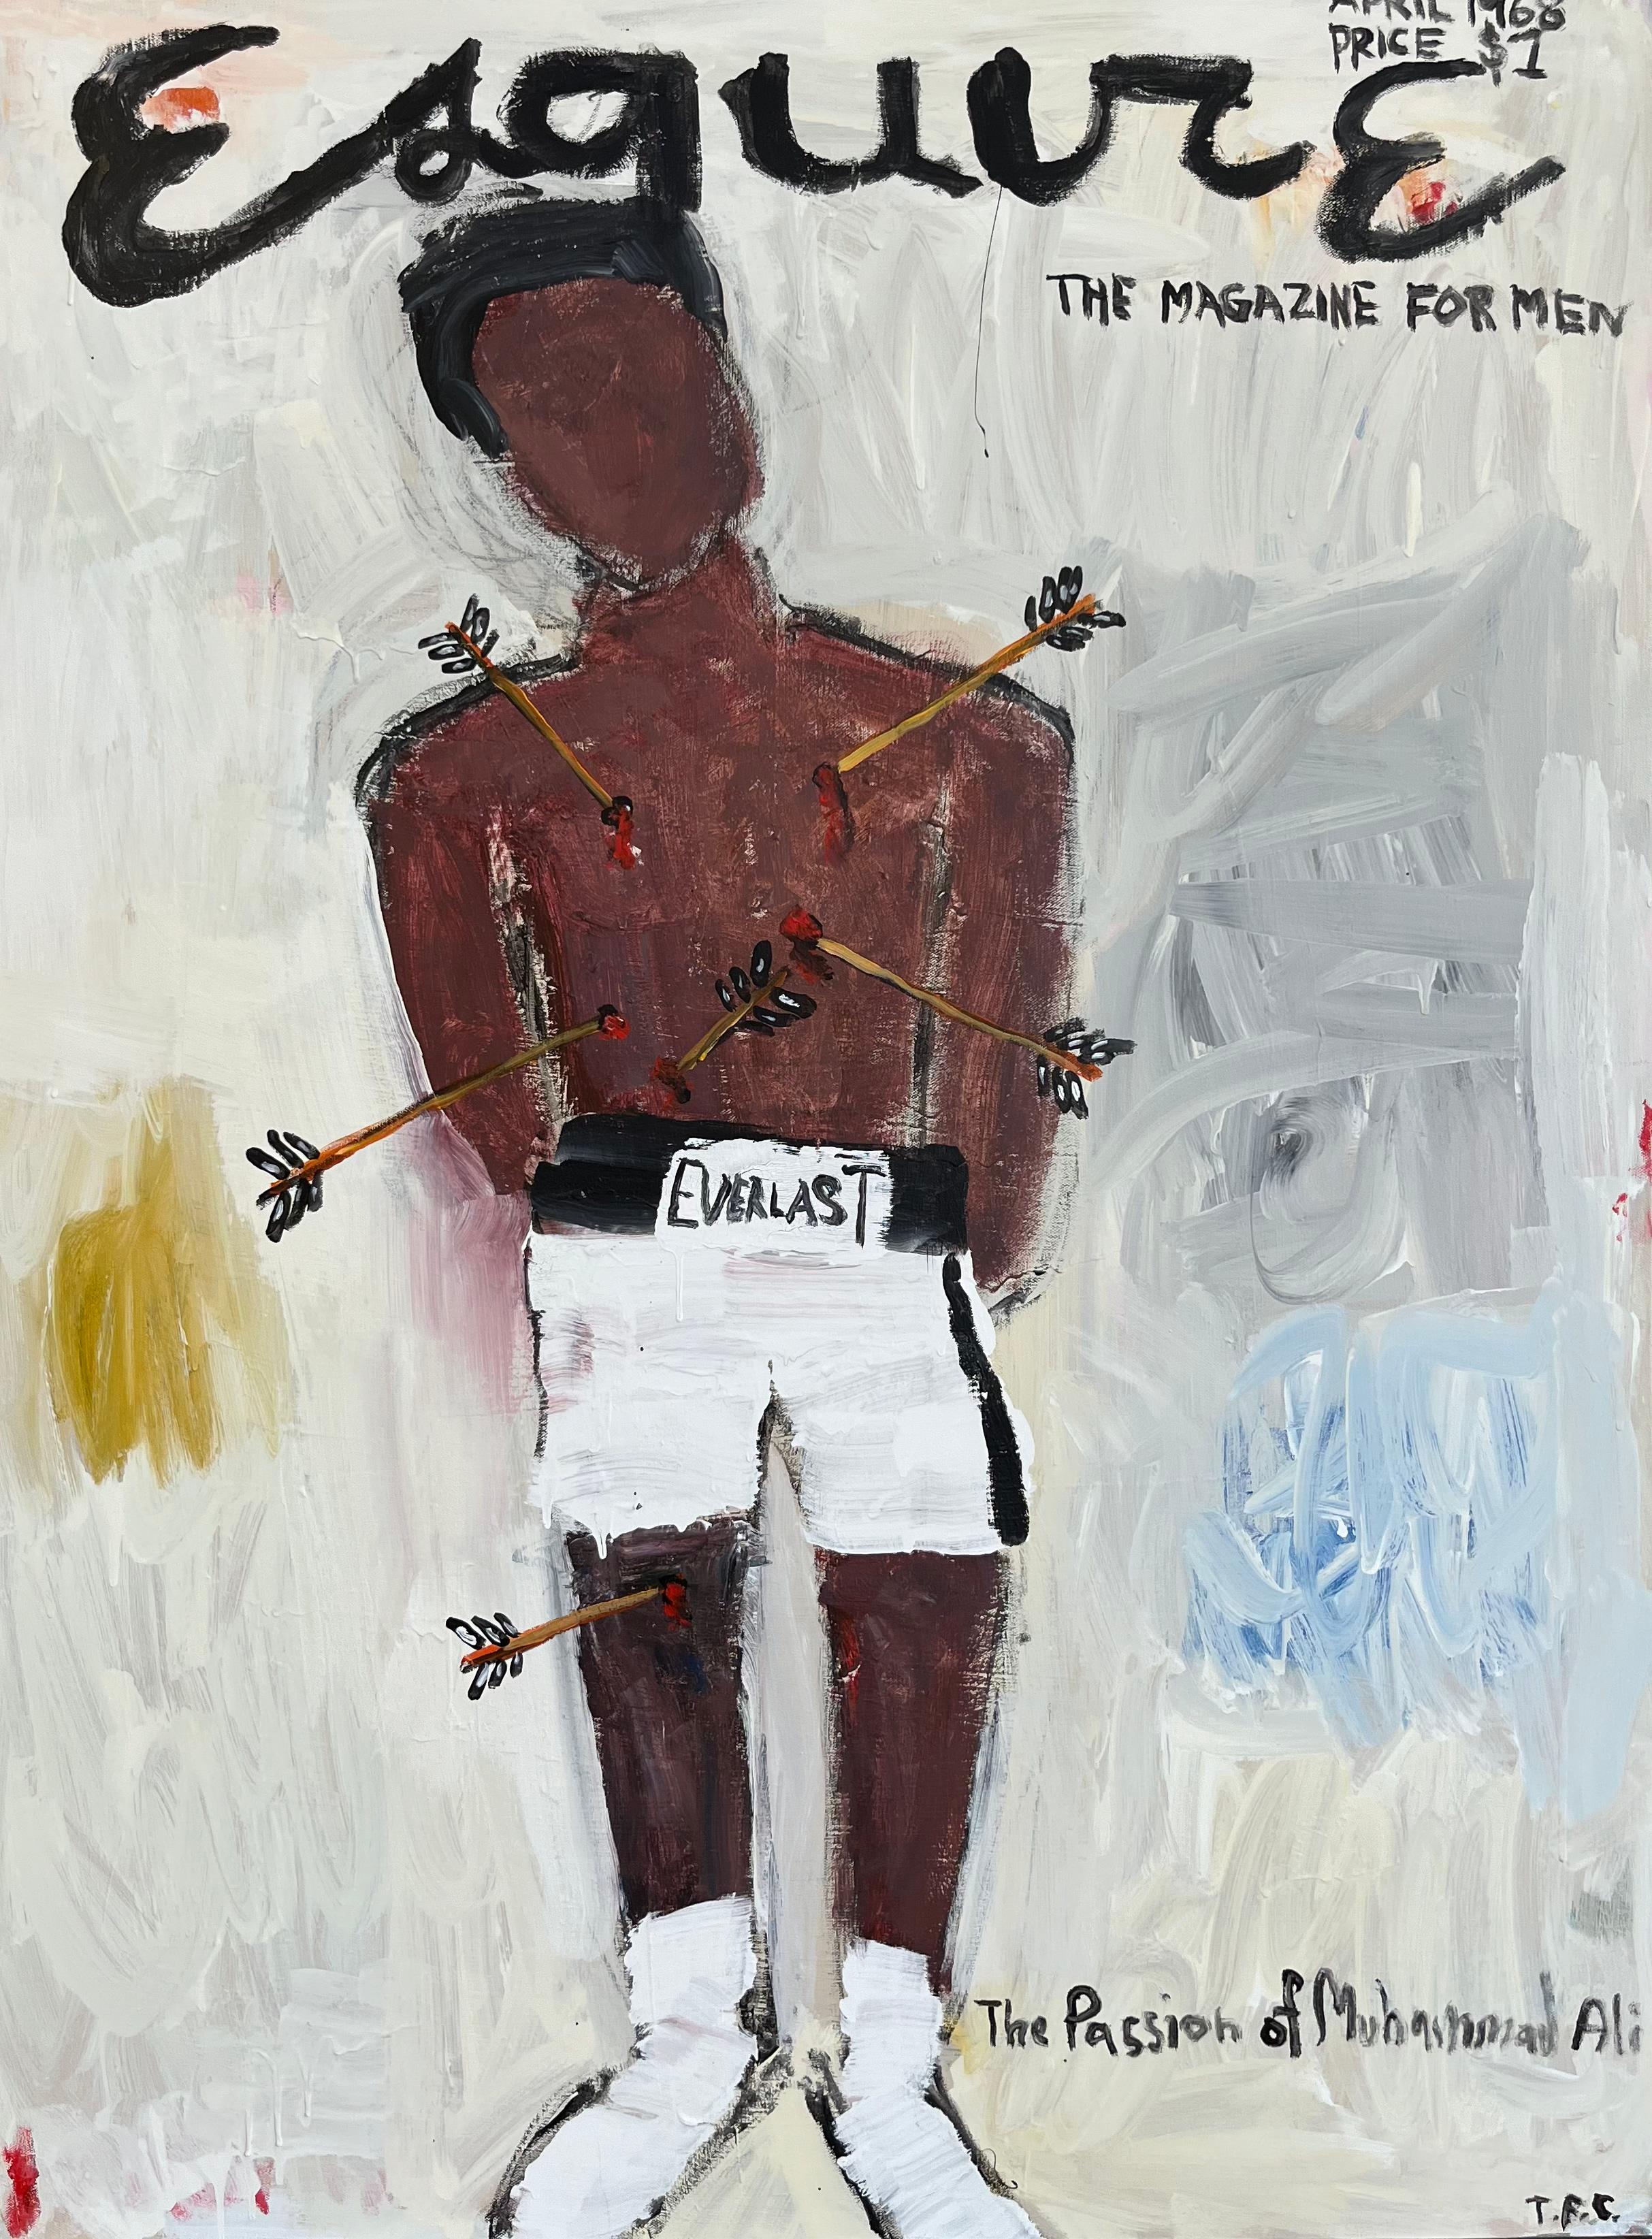 Abstract Painting Tyler Casey - "Muhammad Ali- Esquire" Peinture contemporaine abstraite de couverture de magazine Pop Art